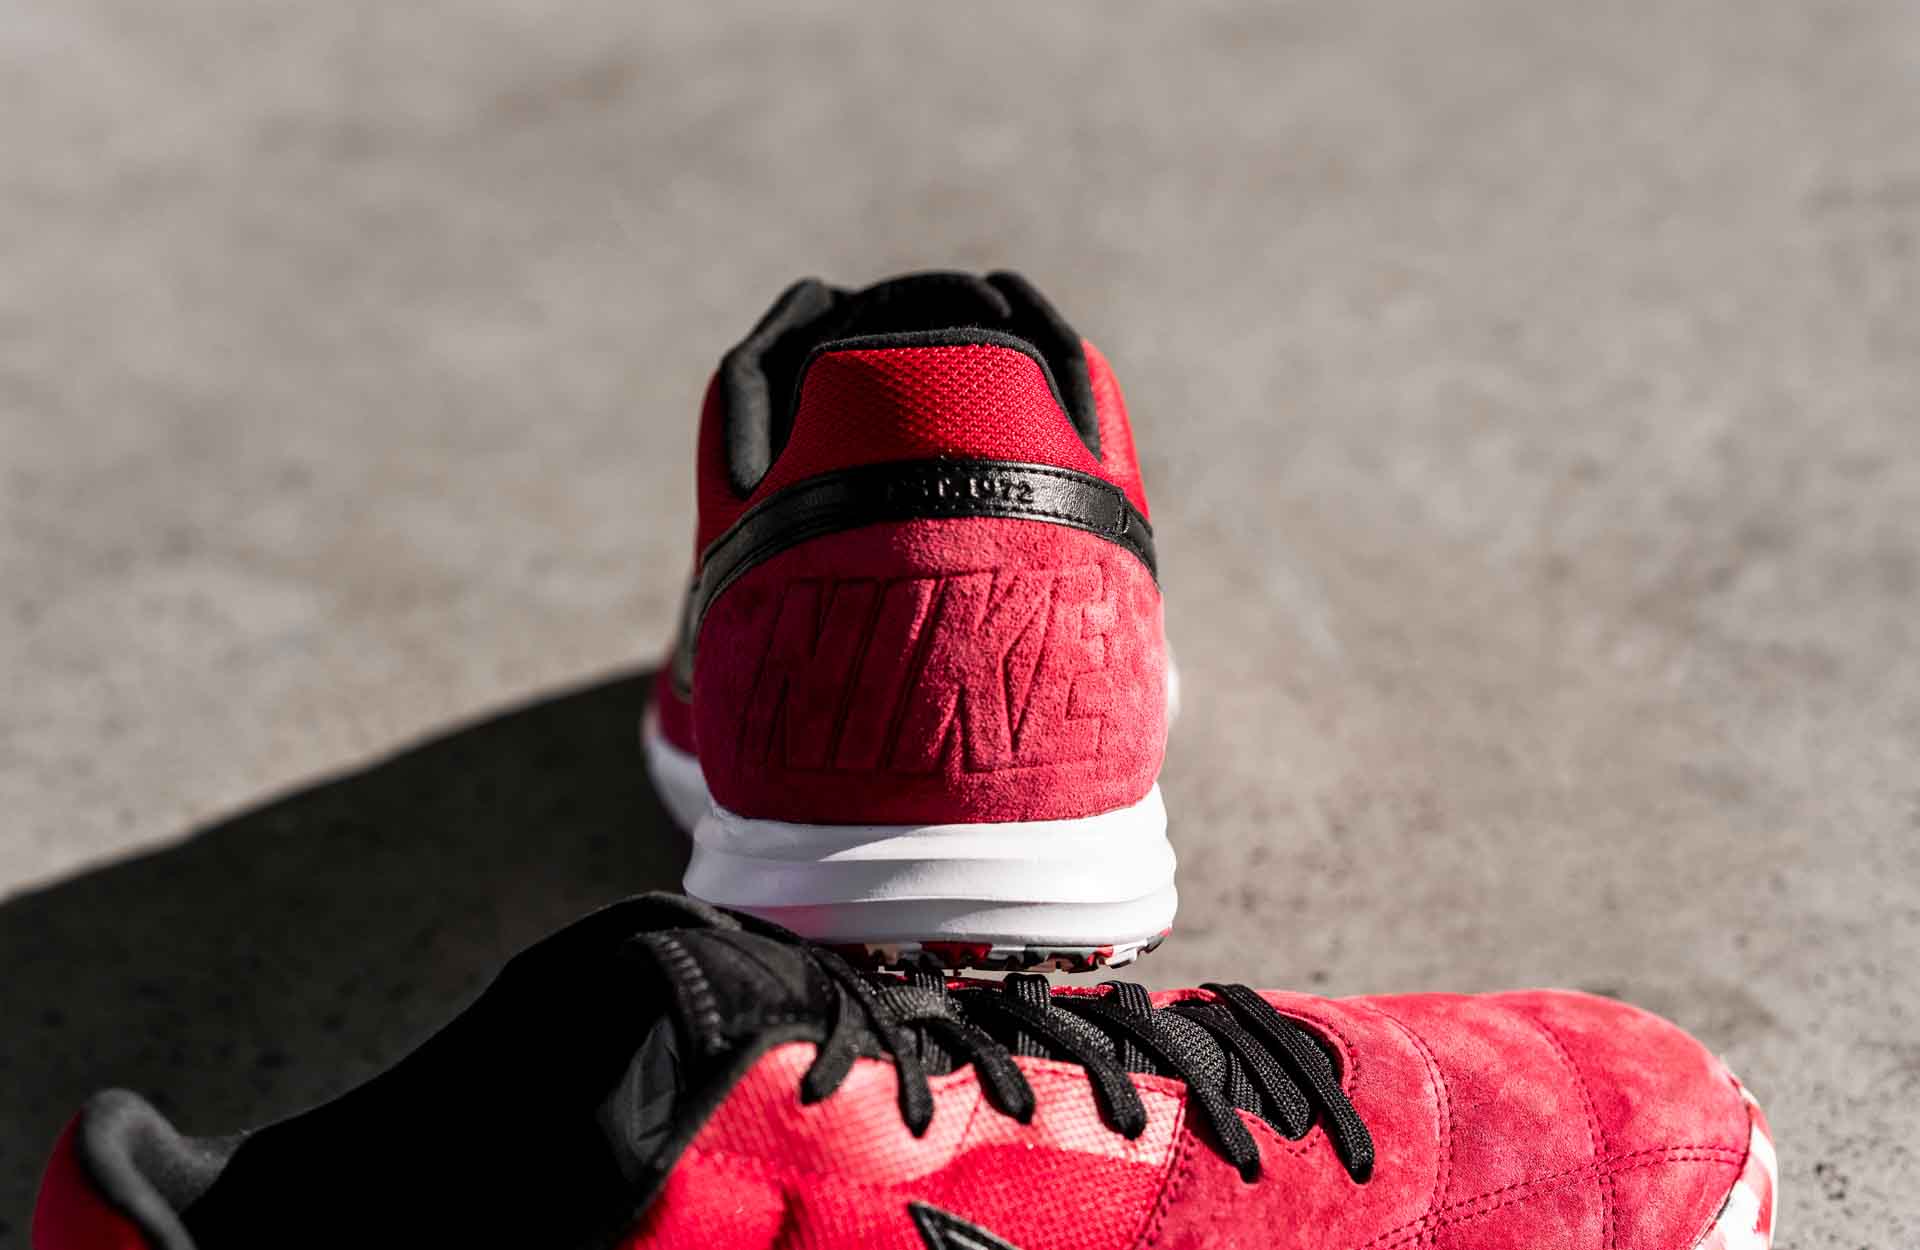 Giày đá banh Nike Premier Sala II mang phong cách cổ điển với chất liệu da lộn cảm giác